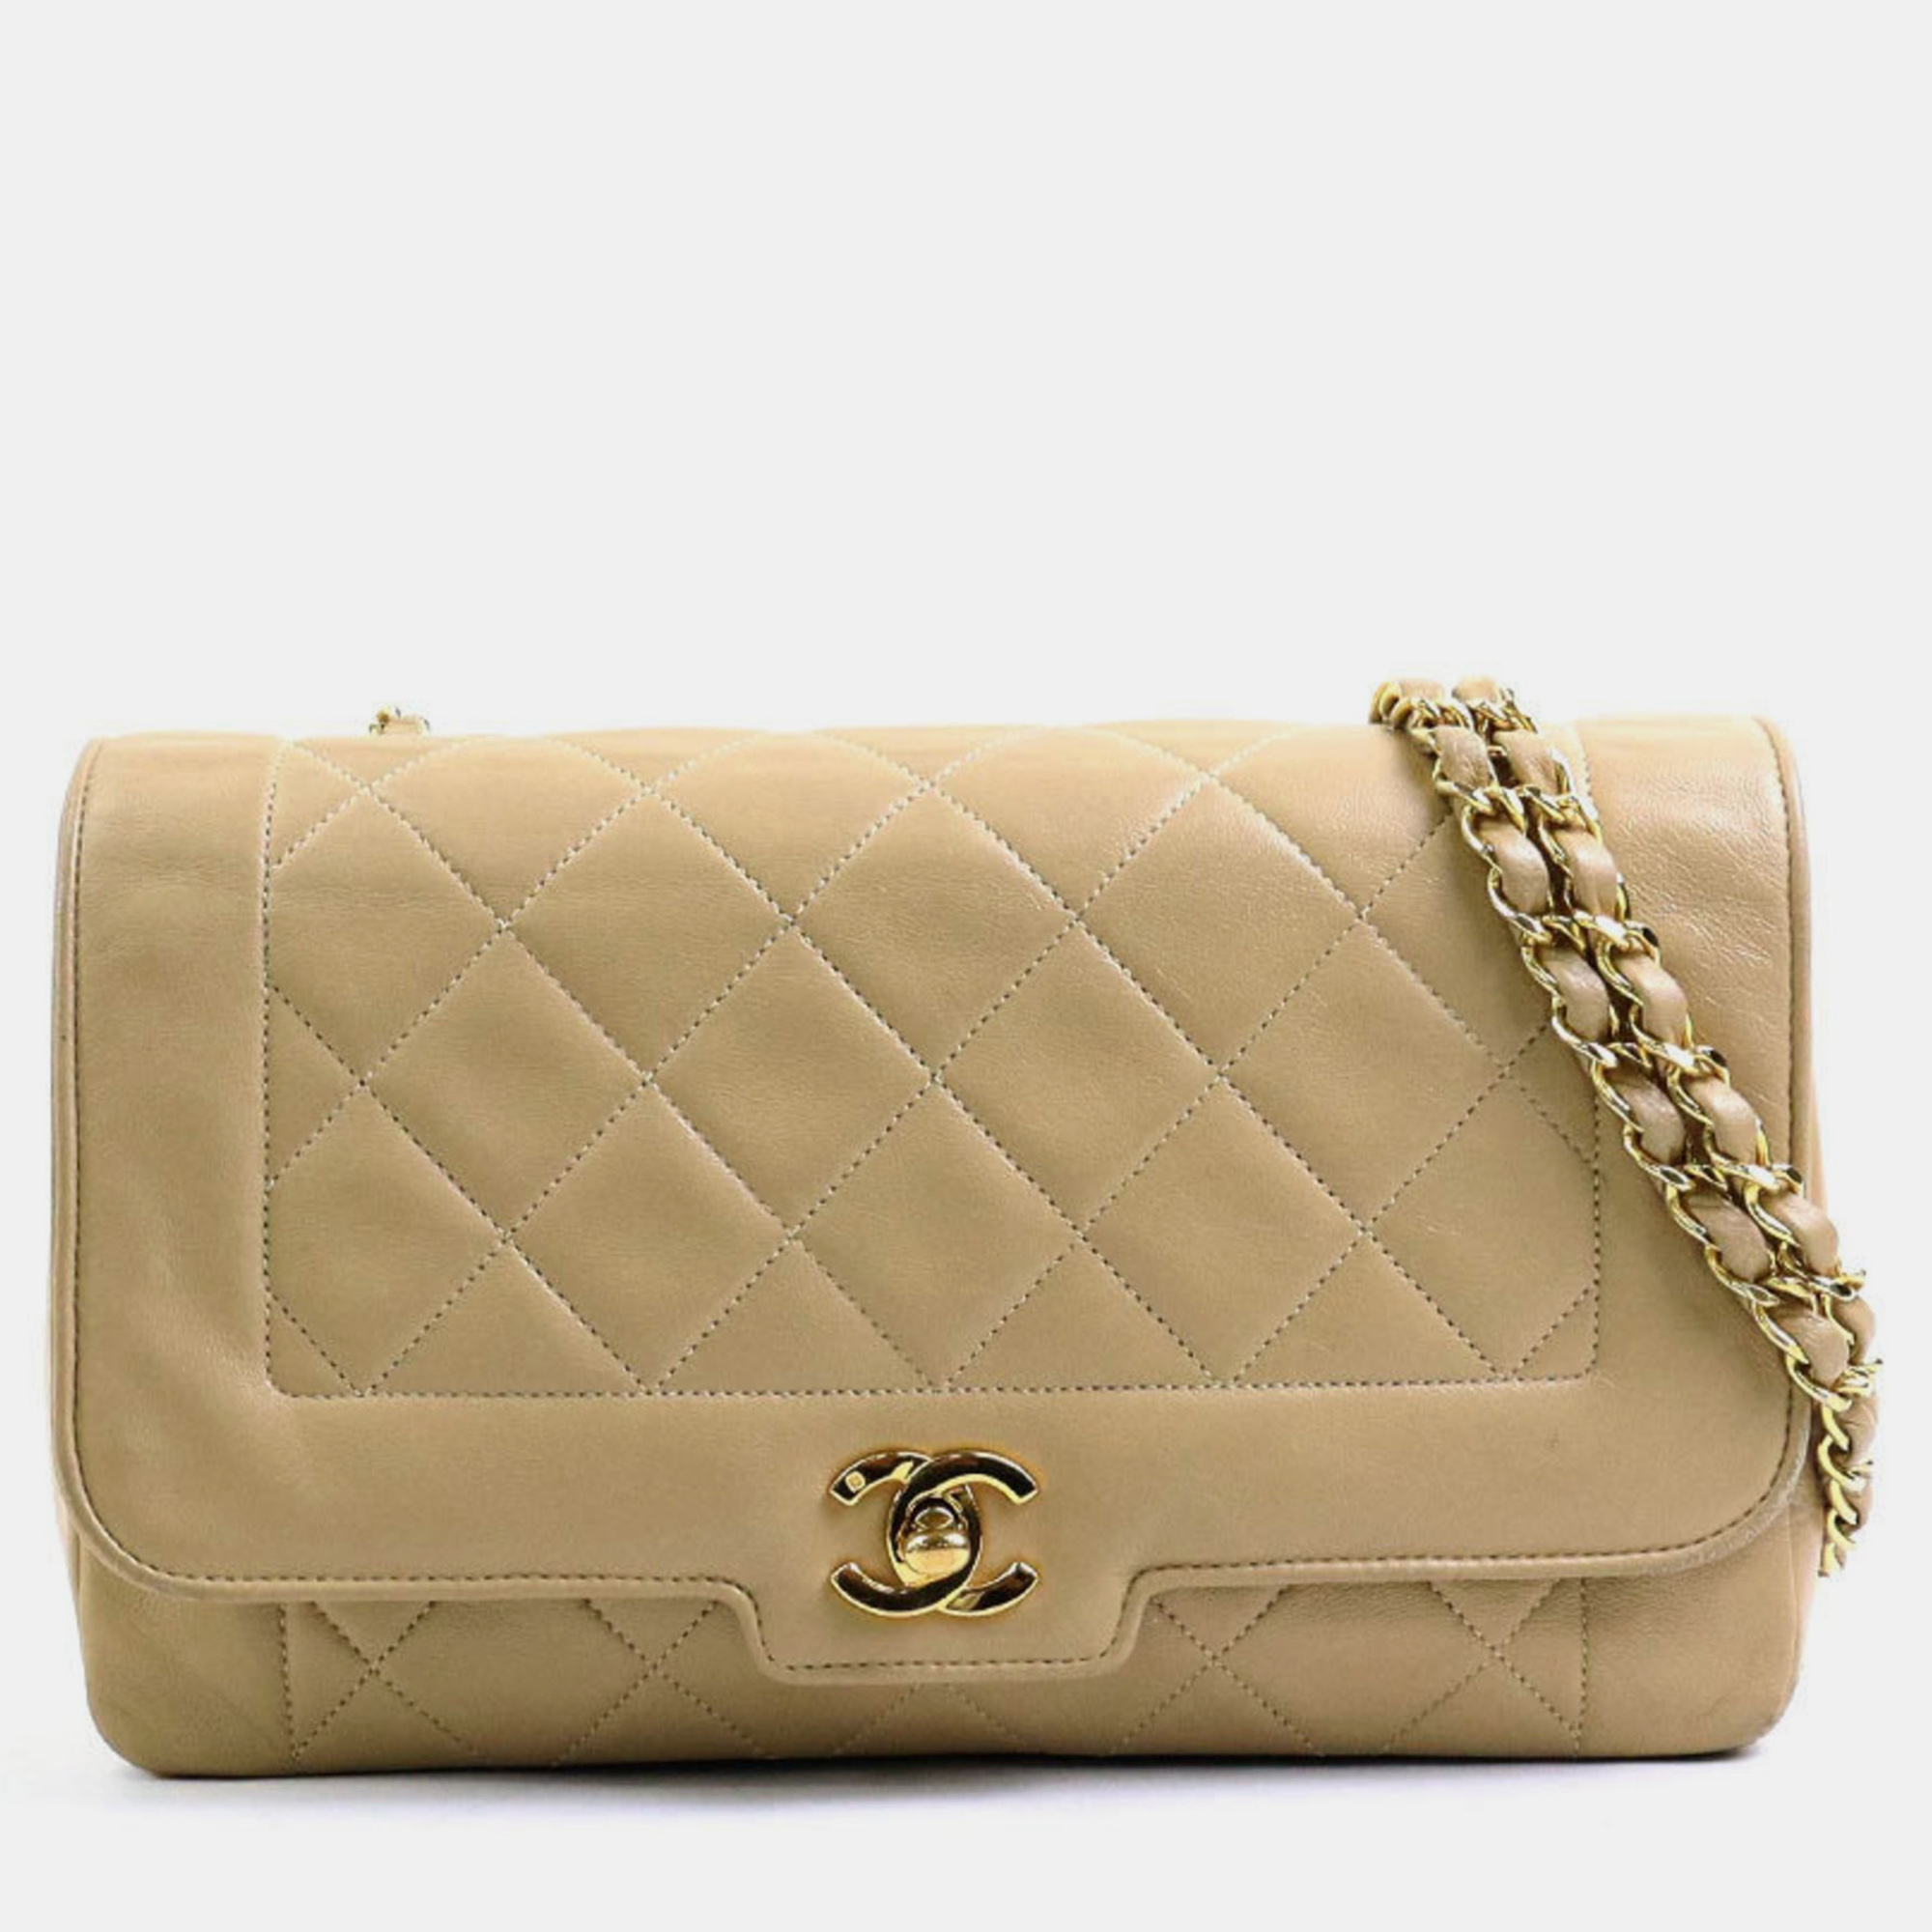 Chanel beige leather matelasse chain vintage diana shoulder bag